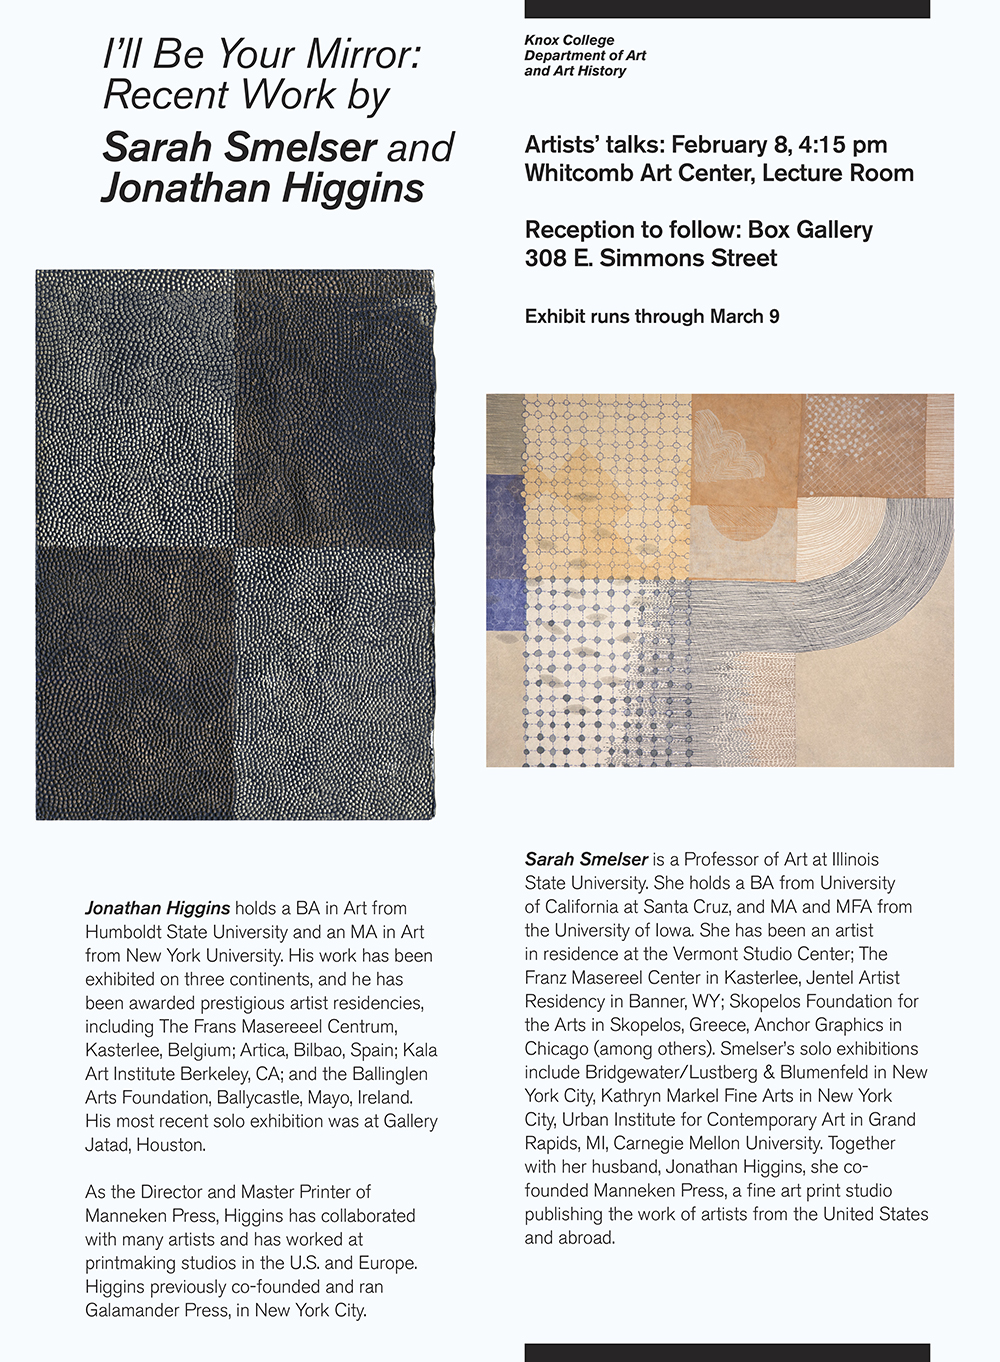 Manneken Press, Jonathan Higgins, Sarah Smelser, The Box Gallery